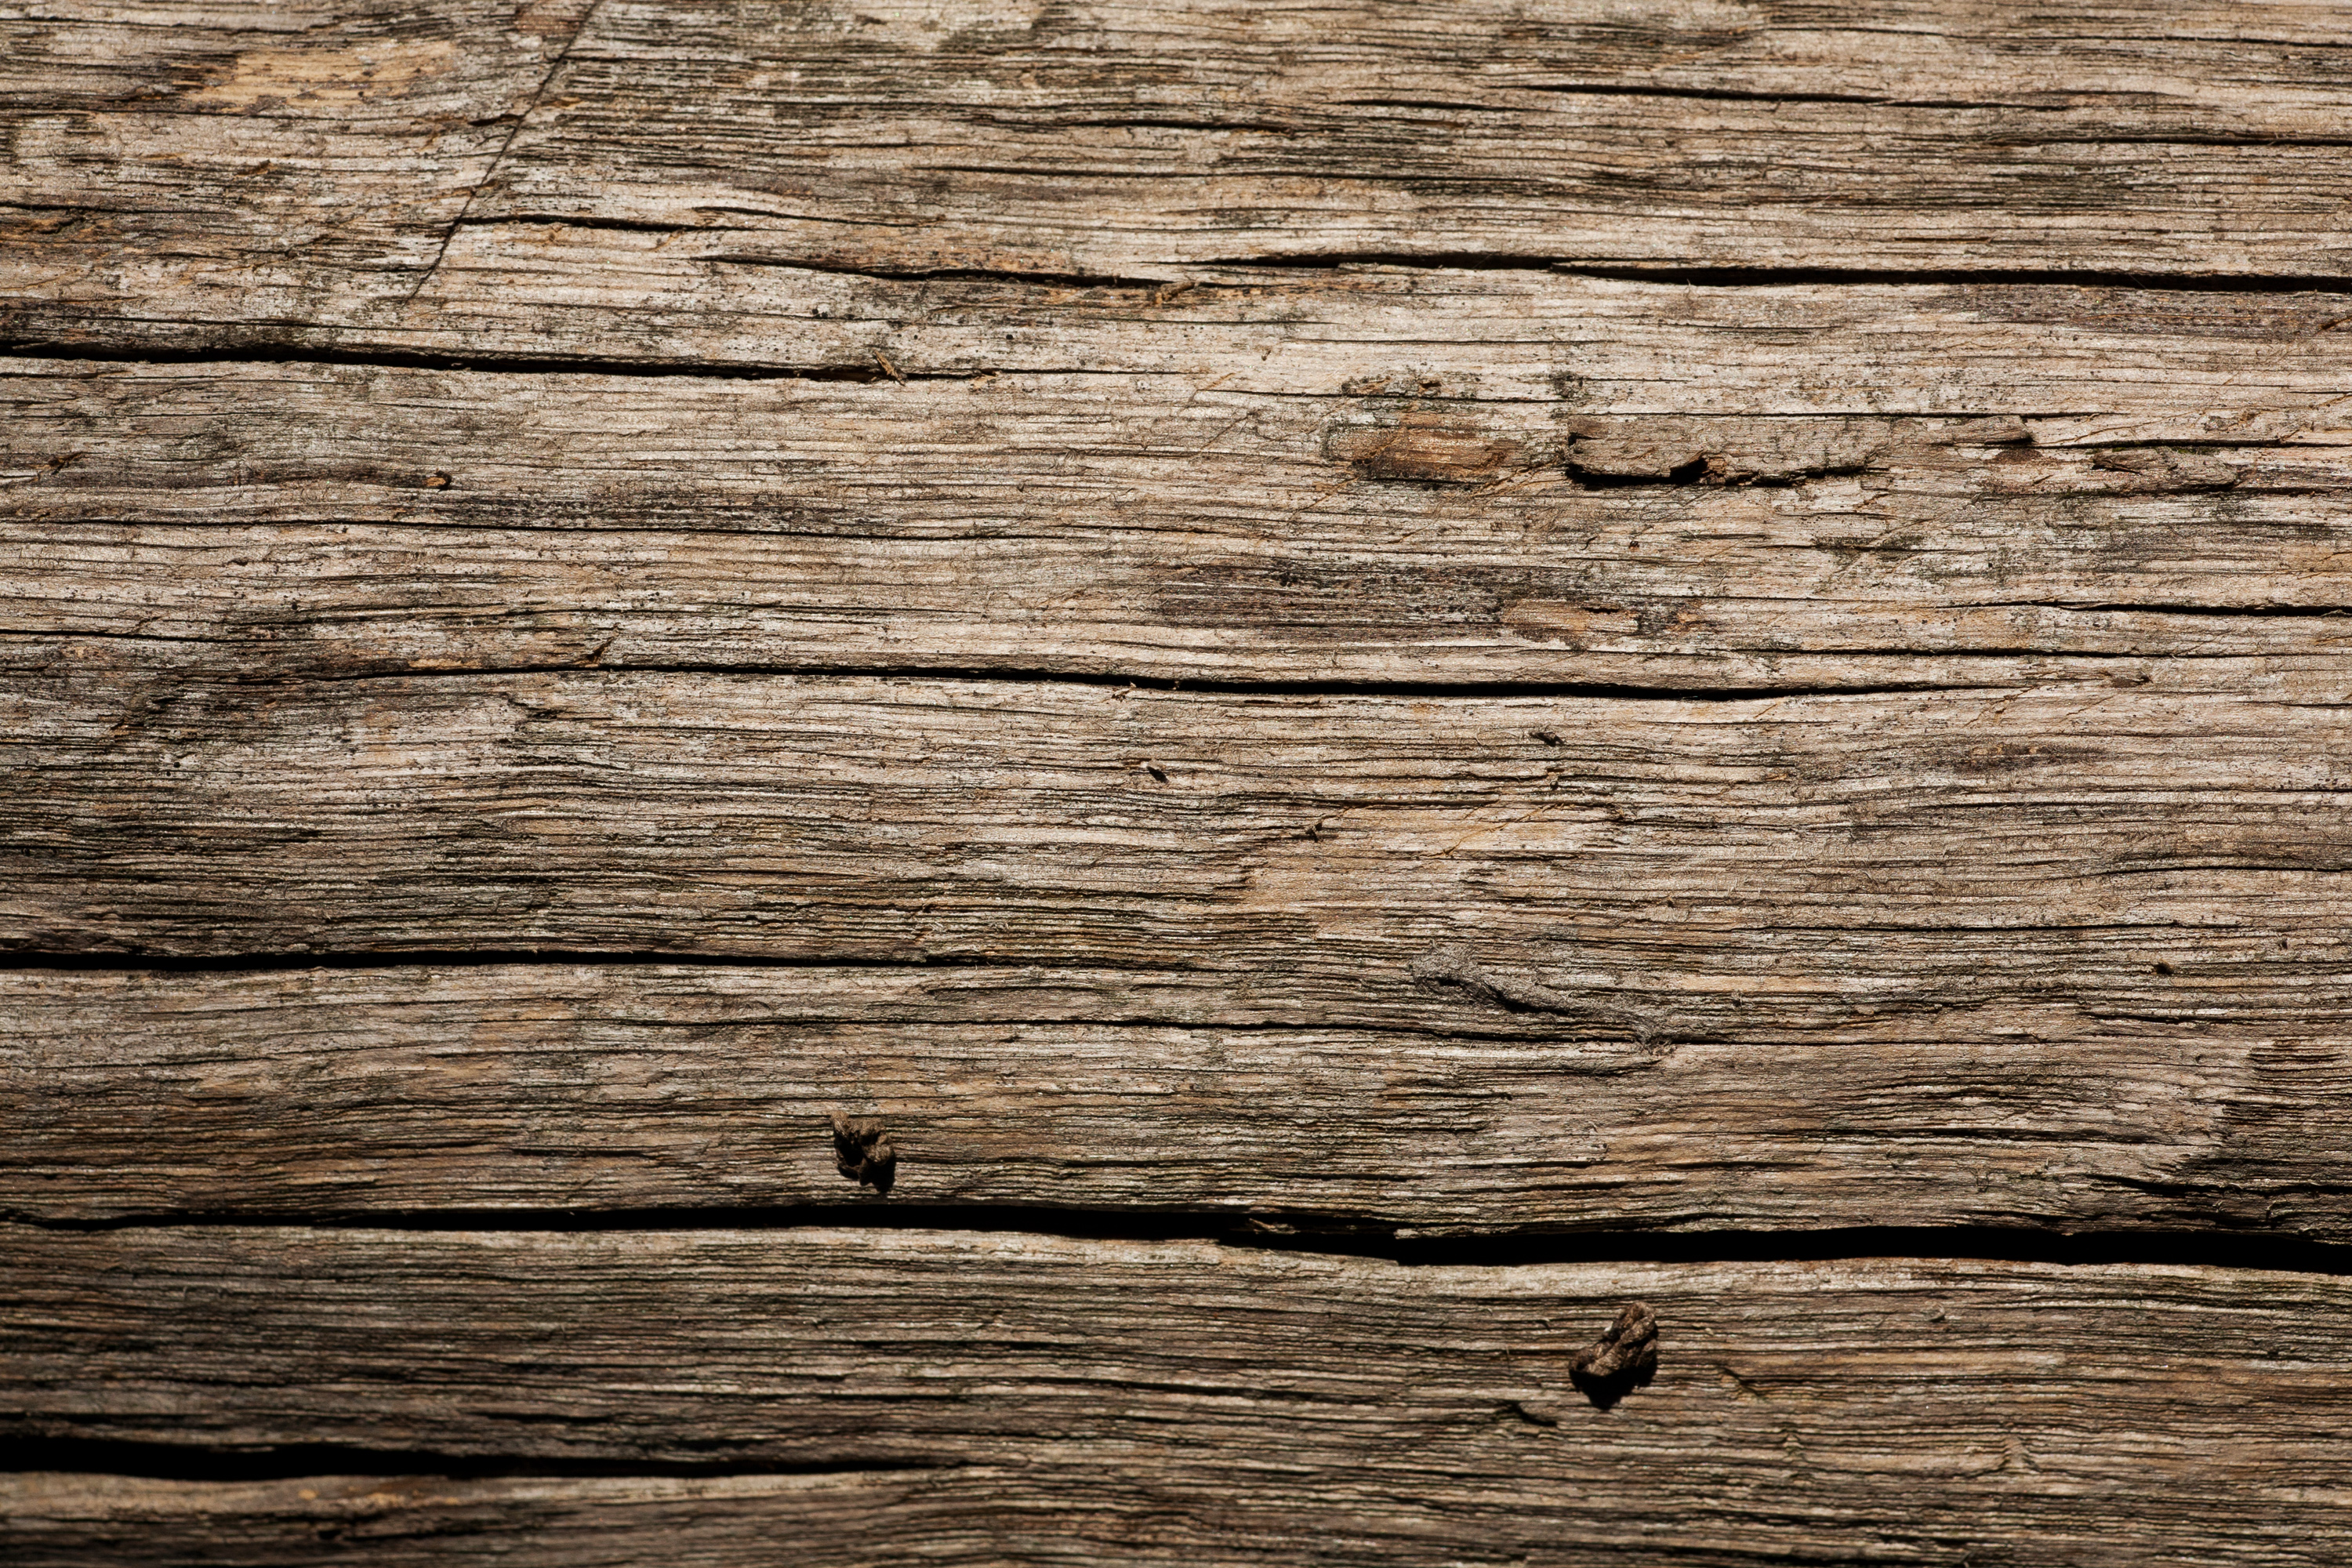 Ván gỗ cũ - Một trong những chất liệu phổ biến nhất trong thiết kế nội thất và trang trí là gỗ cũ. Với những bức tranh về các ván gỗ cũ này, bạn sẽ được khám phá vẻ đẹp của chúng, hương vị của quá khứ và ý nghĩa trong thiết kế hiện đại ngày nay.